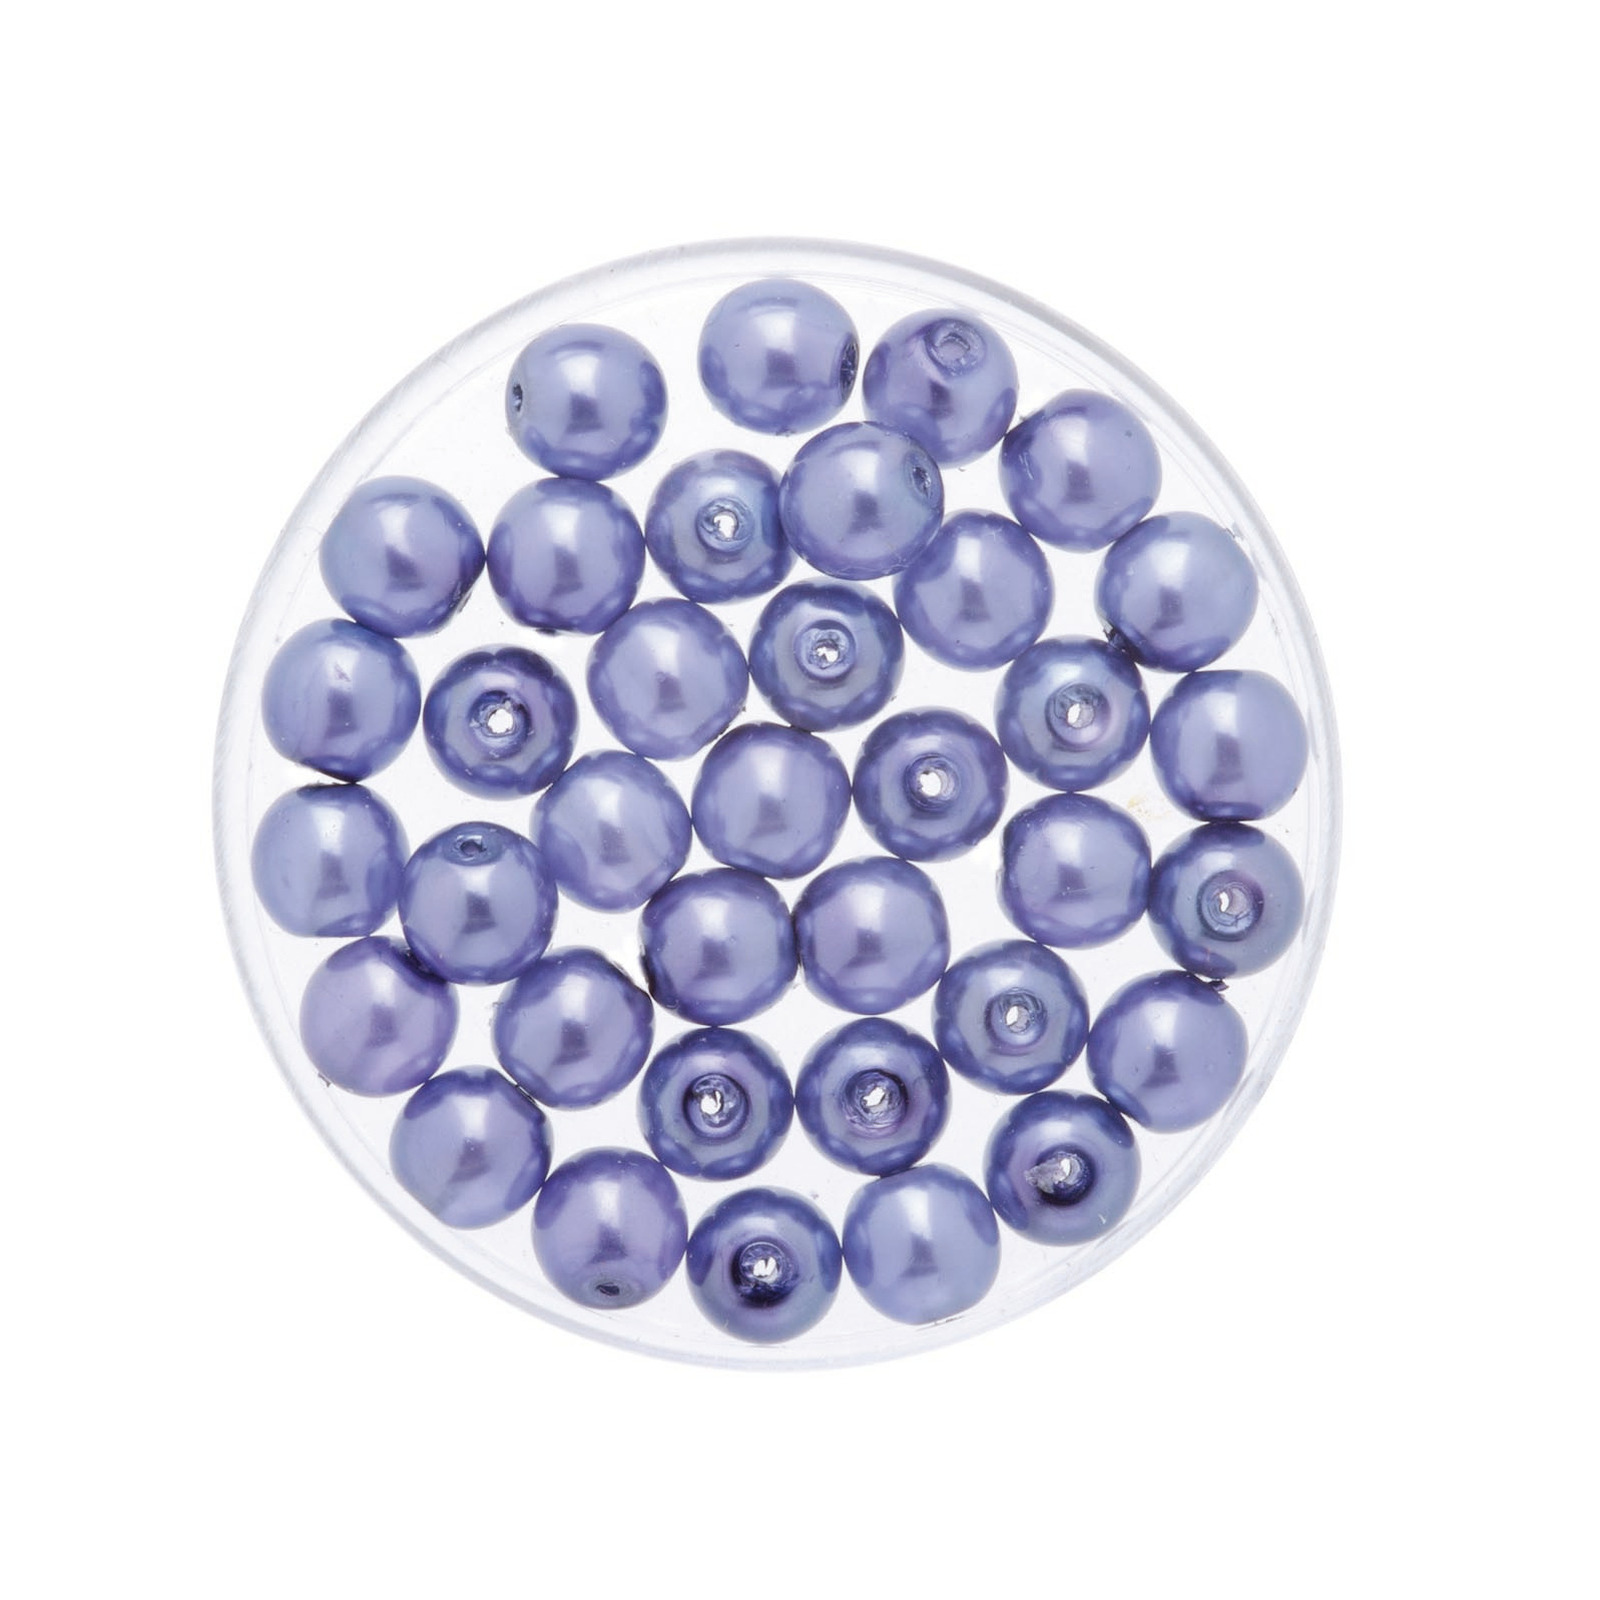 50x stuks sieraden maken Boheemse glaskralen in het transparant lila paars van 6 mm